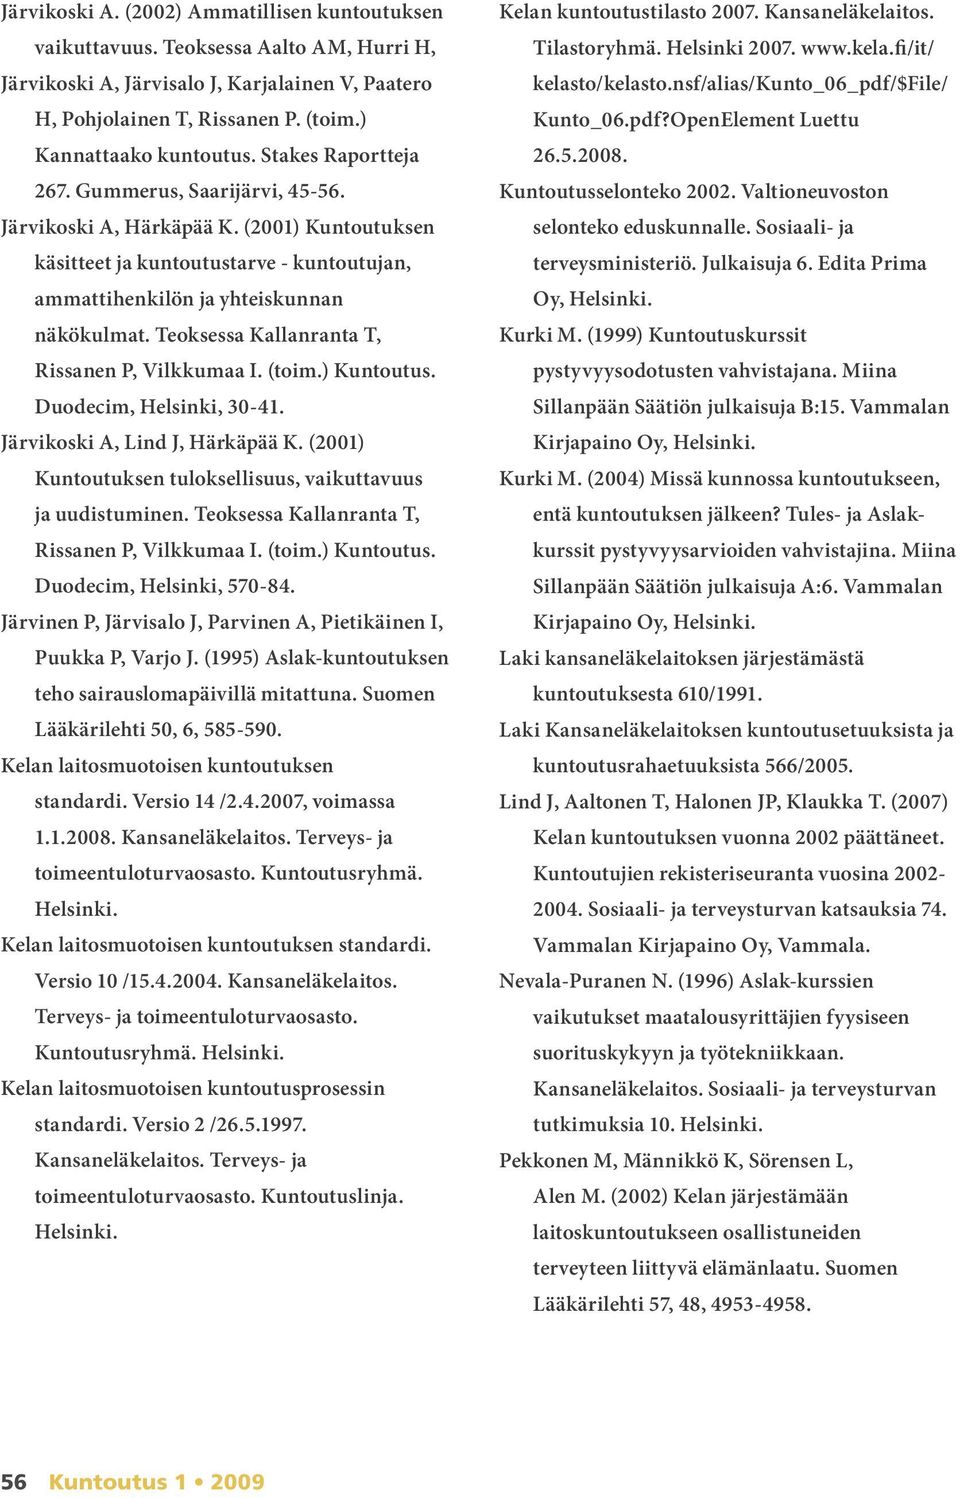 Teoksessa Kallanranta T, Rissanen P, Vilkkumaa I. (toim.) Kuntoutus. Duodecim, Helsinki, 30-41. Järvikoski A, Lind J, Härkäpää K. (2001) Kuntoutuksen tuloksellisuus, vaikuttavuus ja uudistuminen.